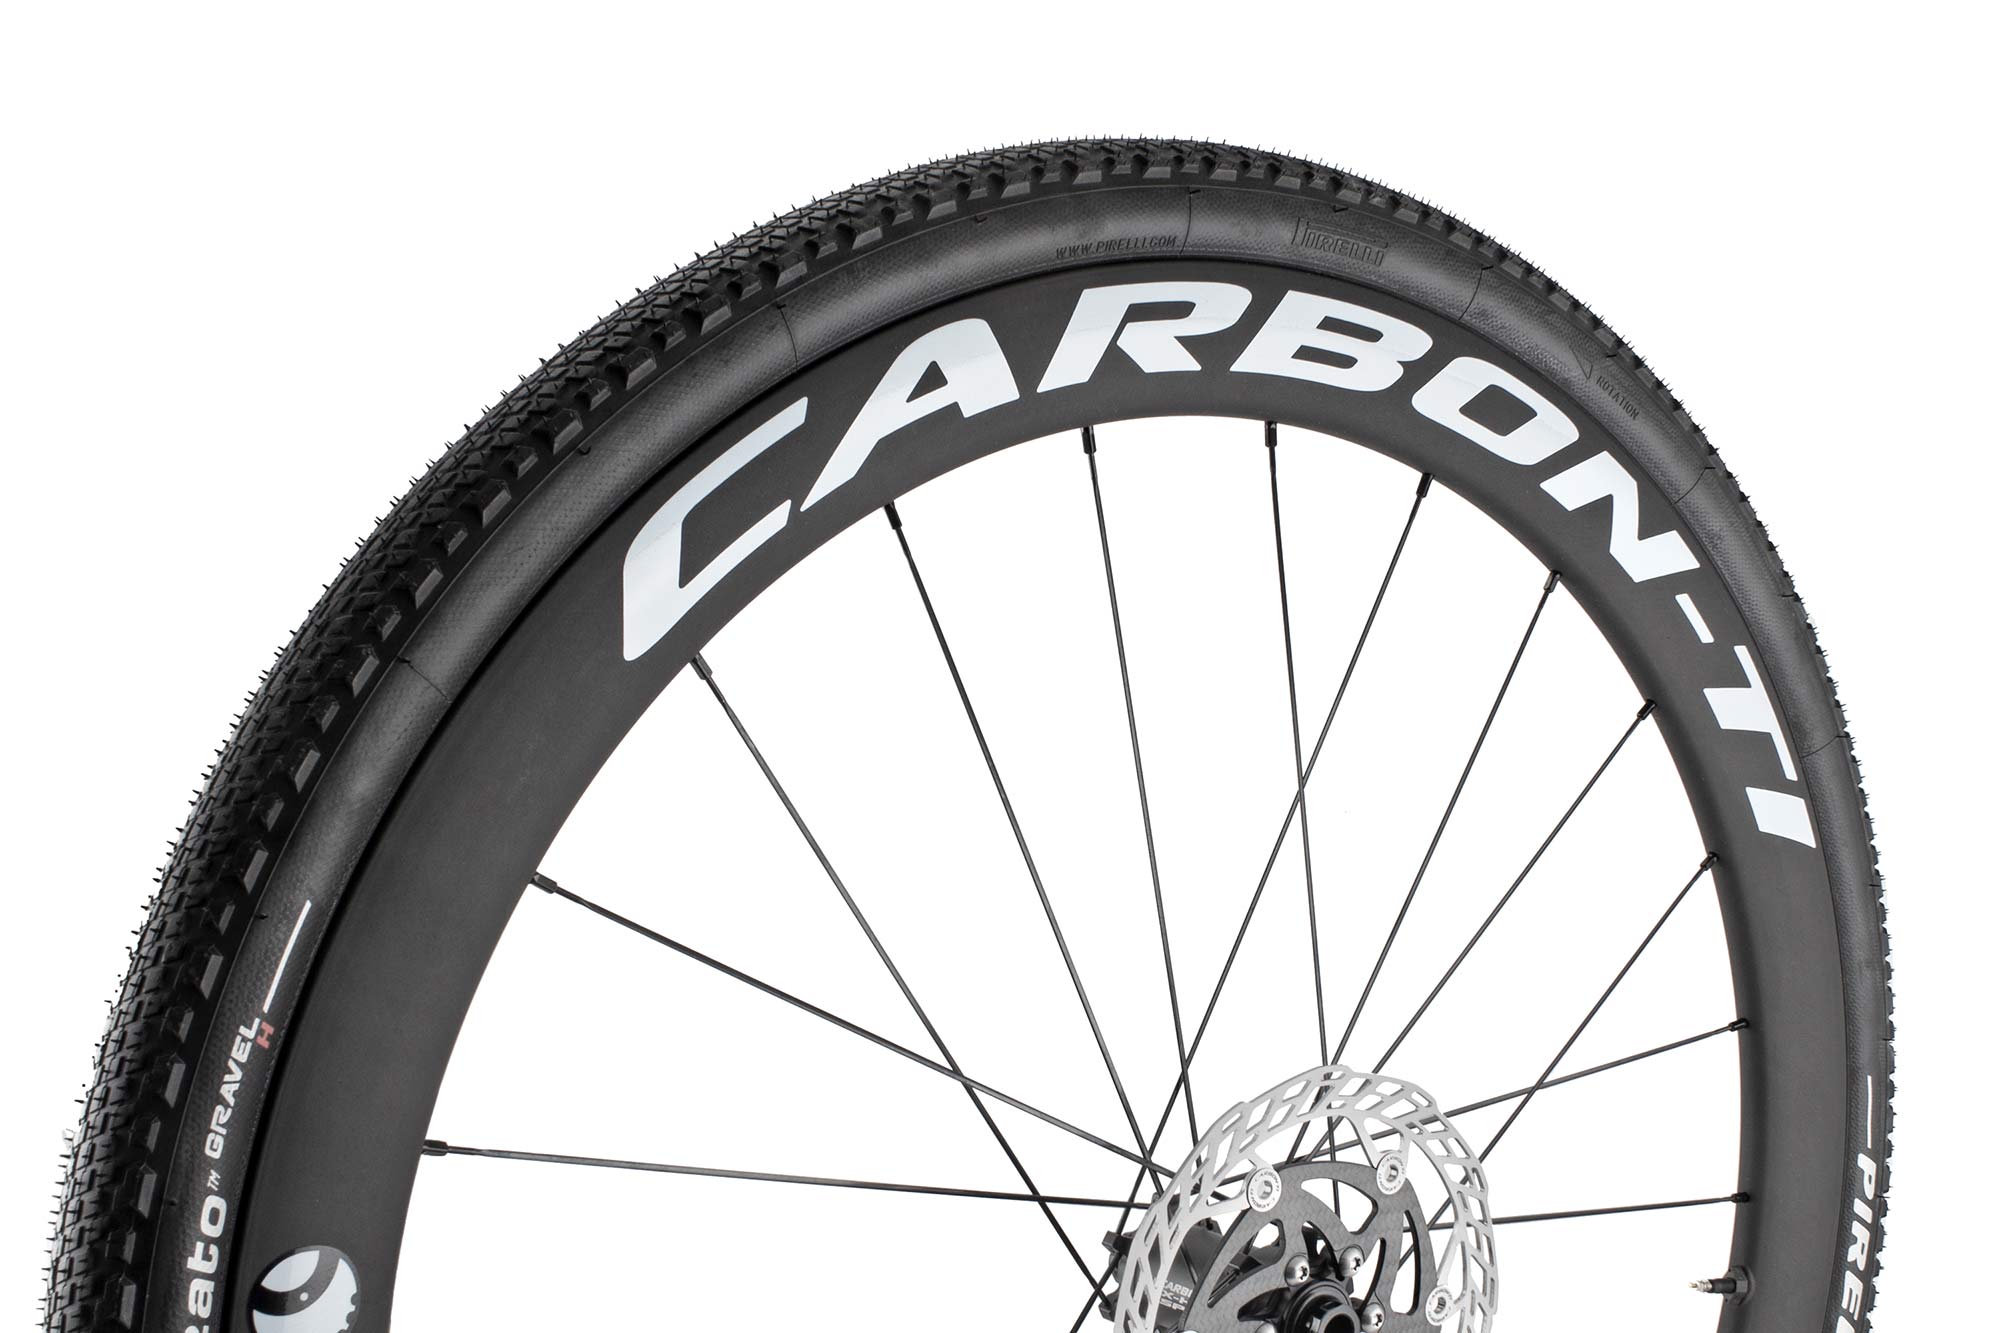 Carbon-Ti X-Wheel SpeedCarbon & GravelCarbon Disc 44, aero carbon gravel road wheels, gravel tire